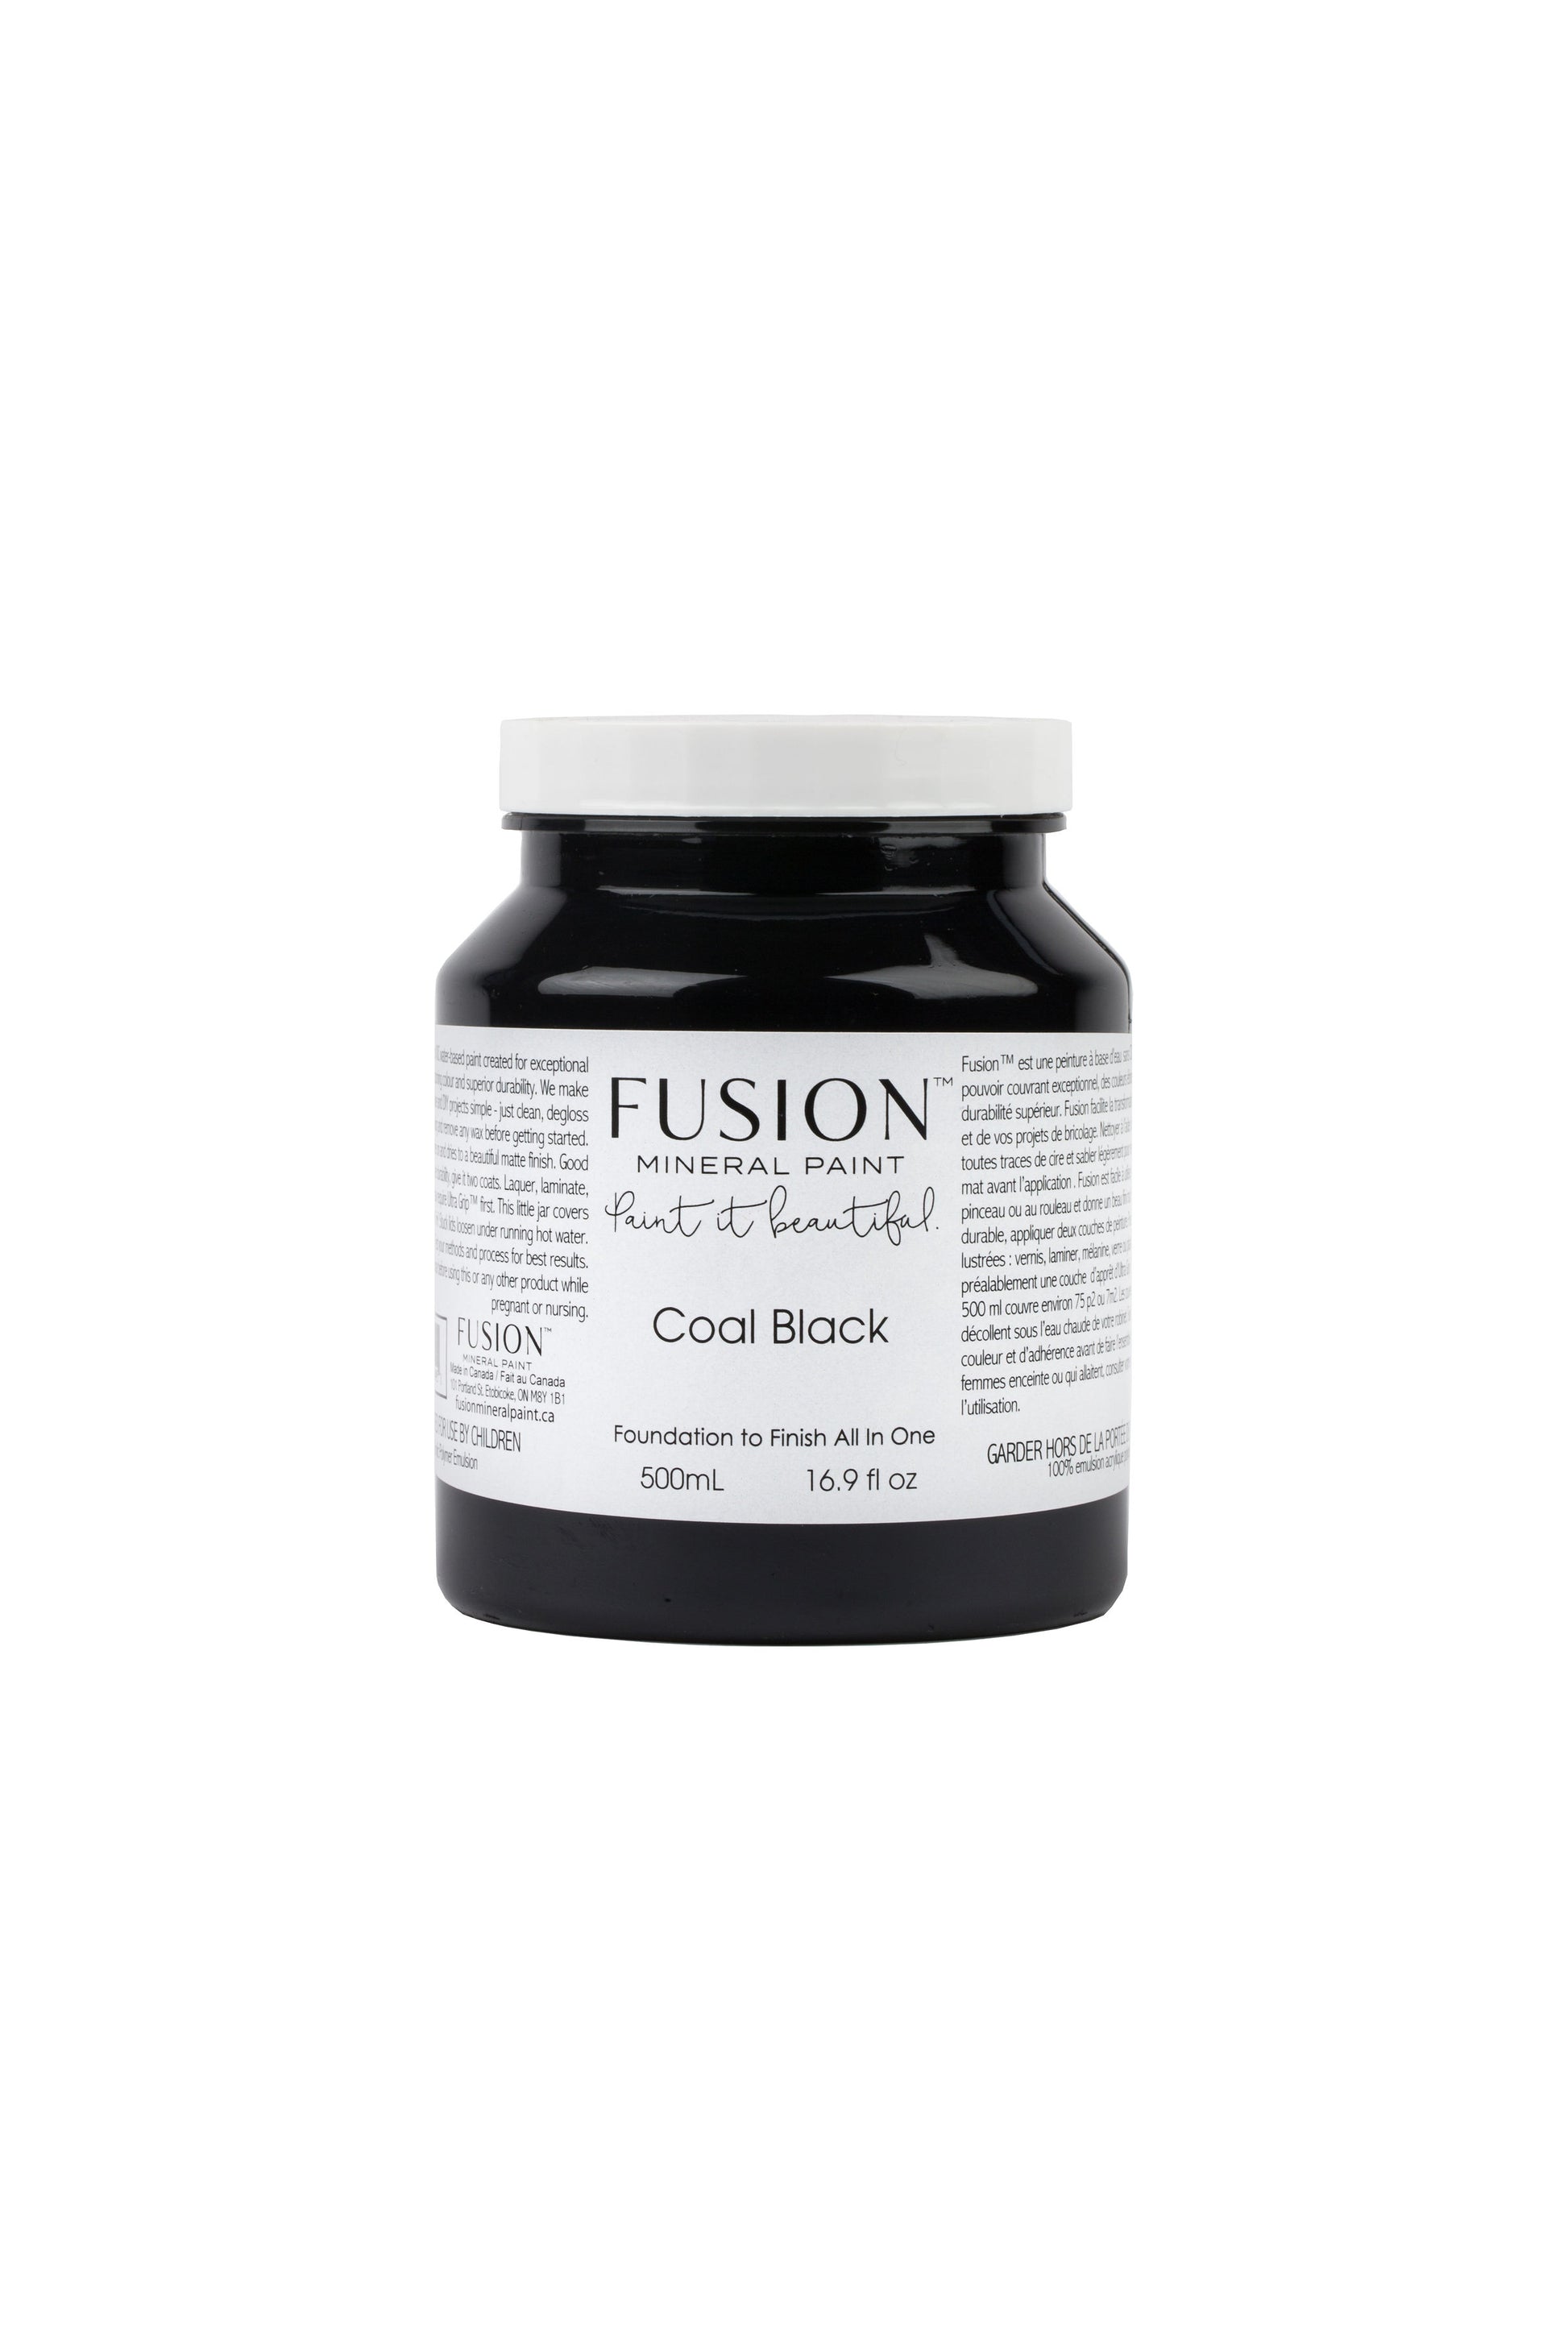 Coal Black Fusion Mineral Paint, Dark Black Paint Color| 500ml Pint Size